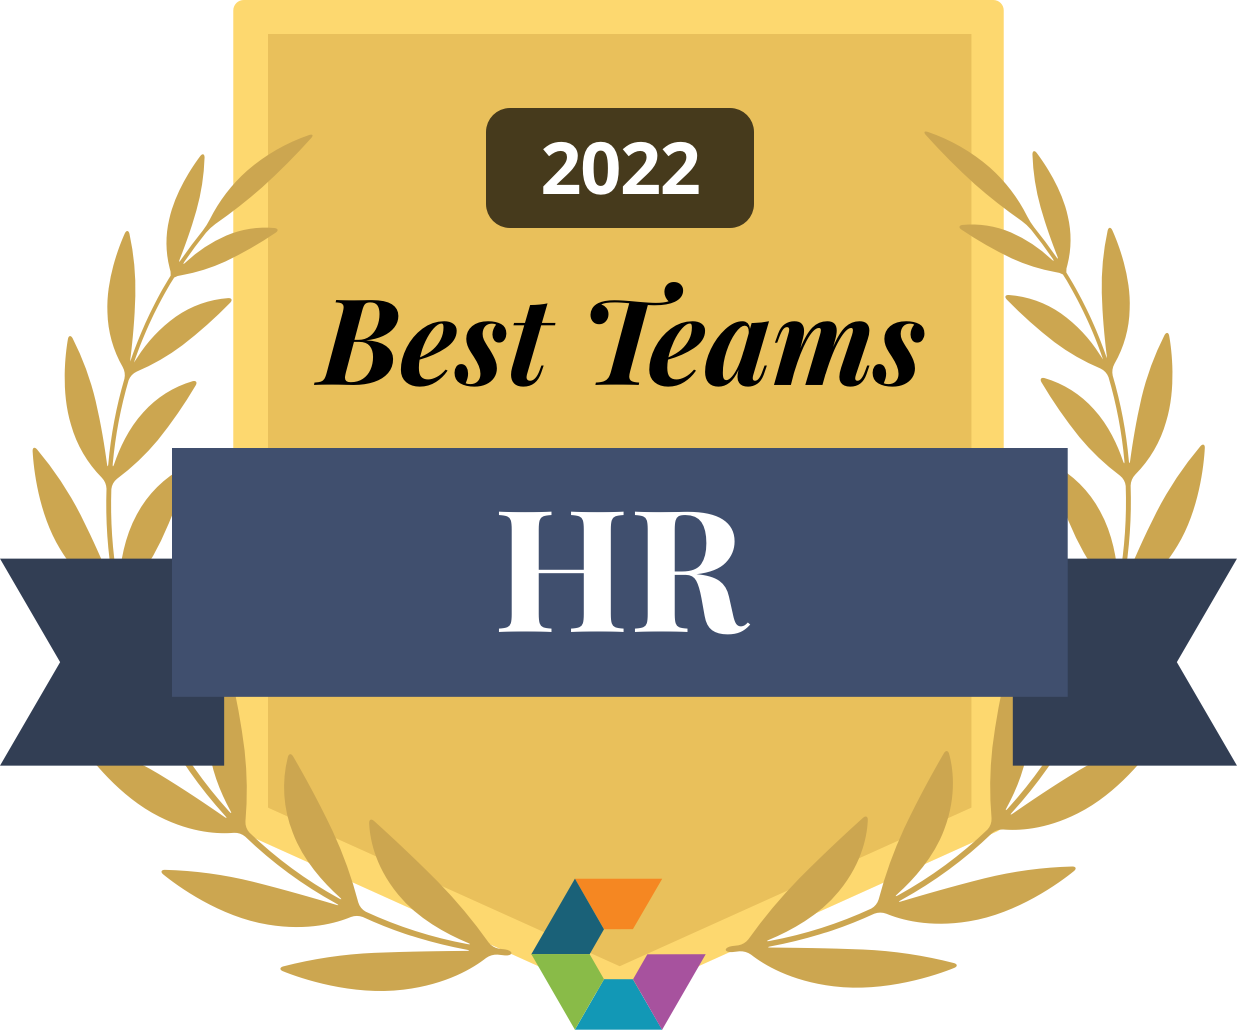 Best HR Teams, 2022